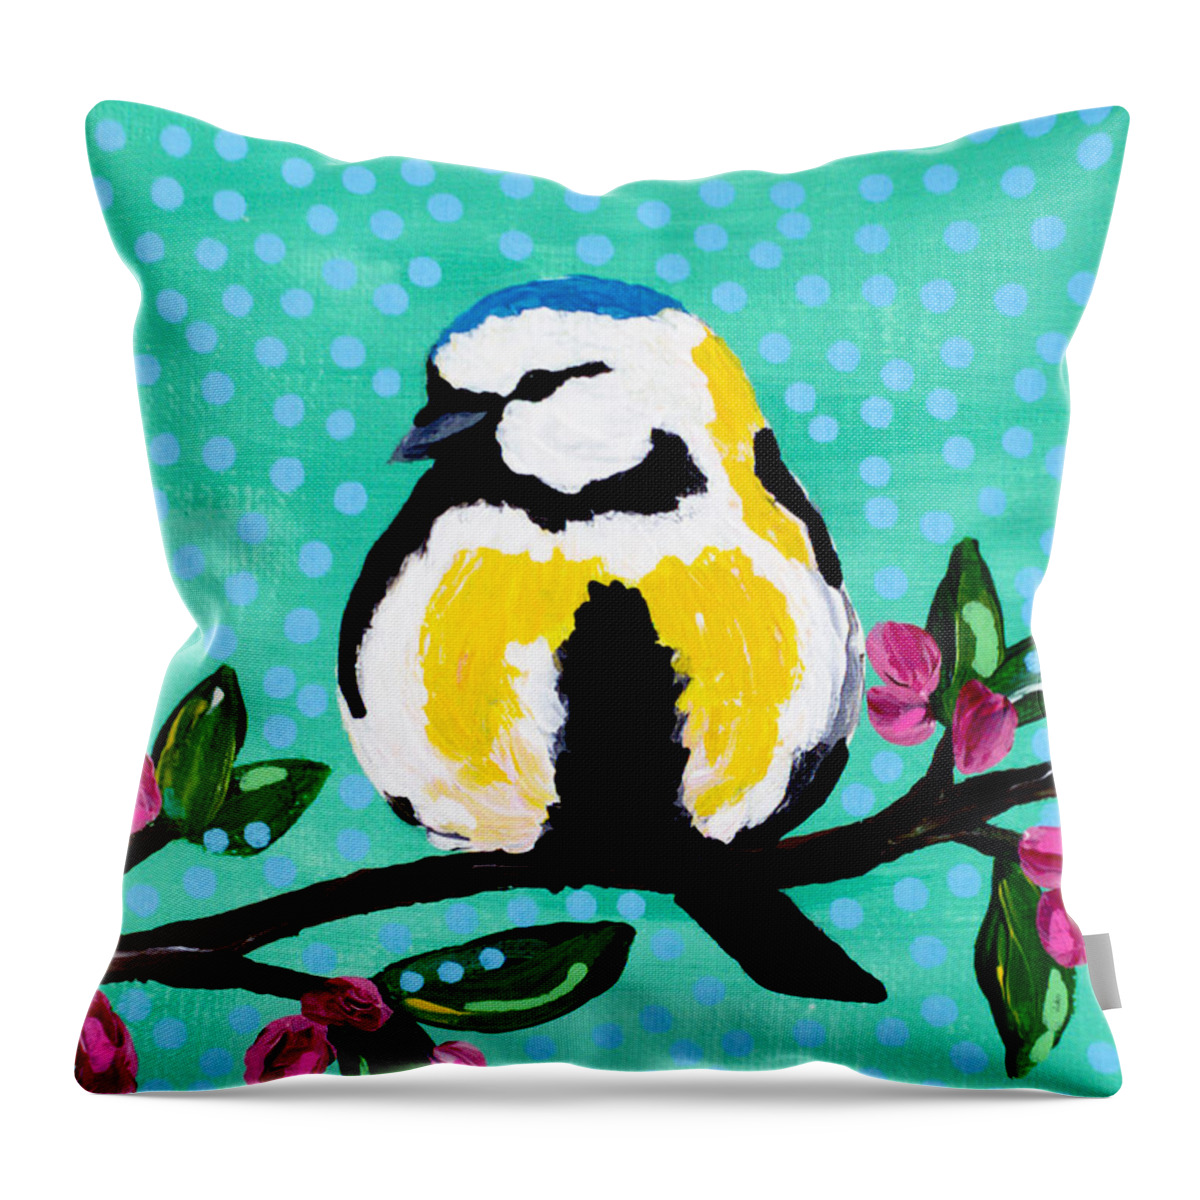 Bird Throw Pillow featuring the painting Bird Teal by Beth Ann Scott